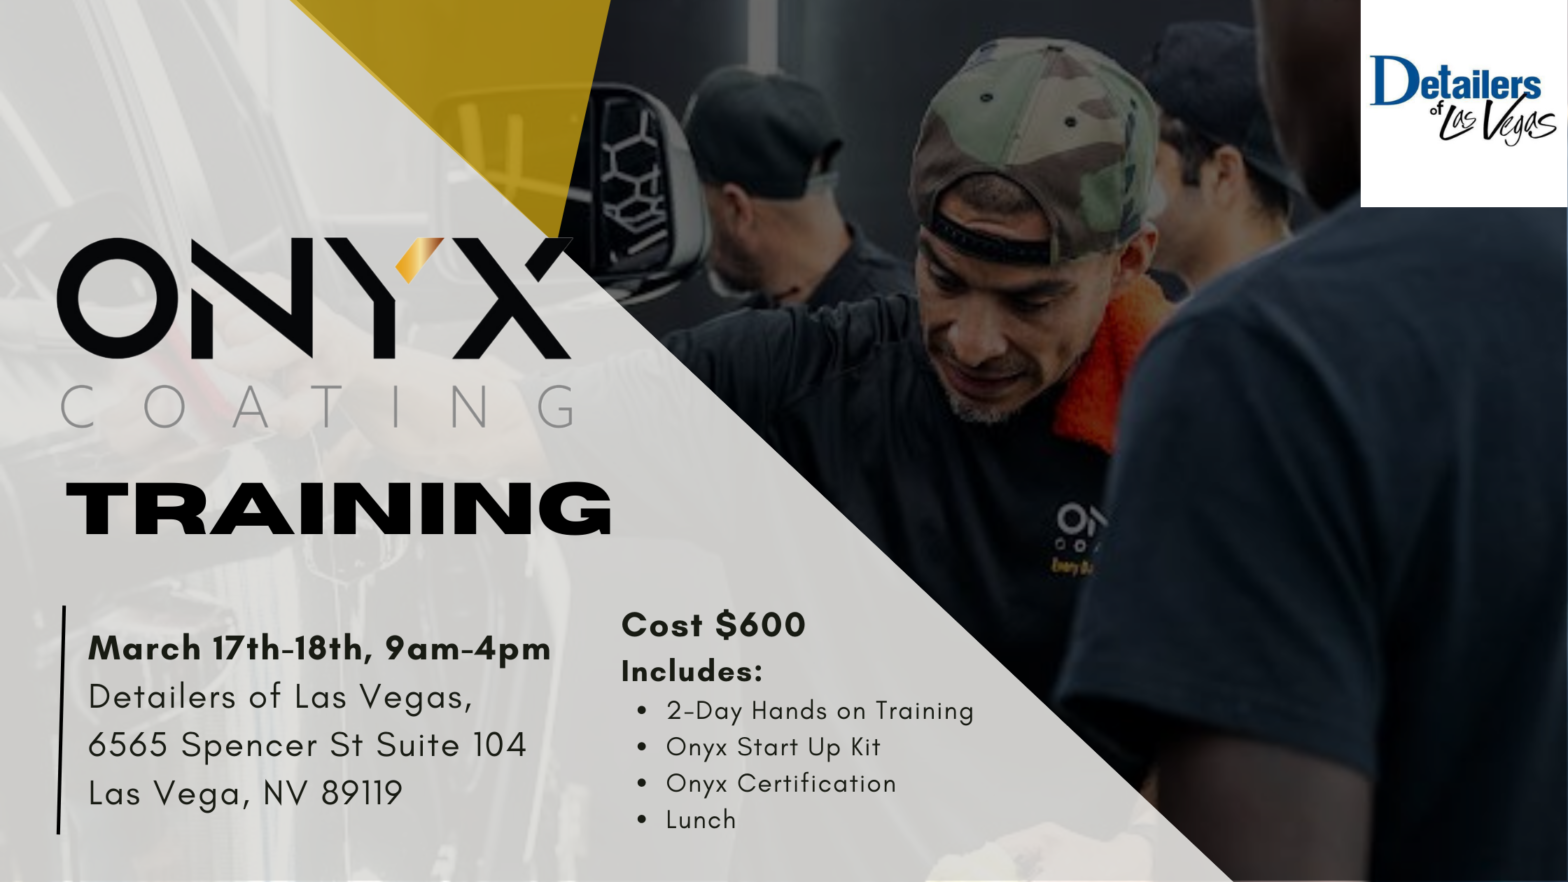 Onyx Coating LA car detailing training day